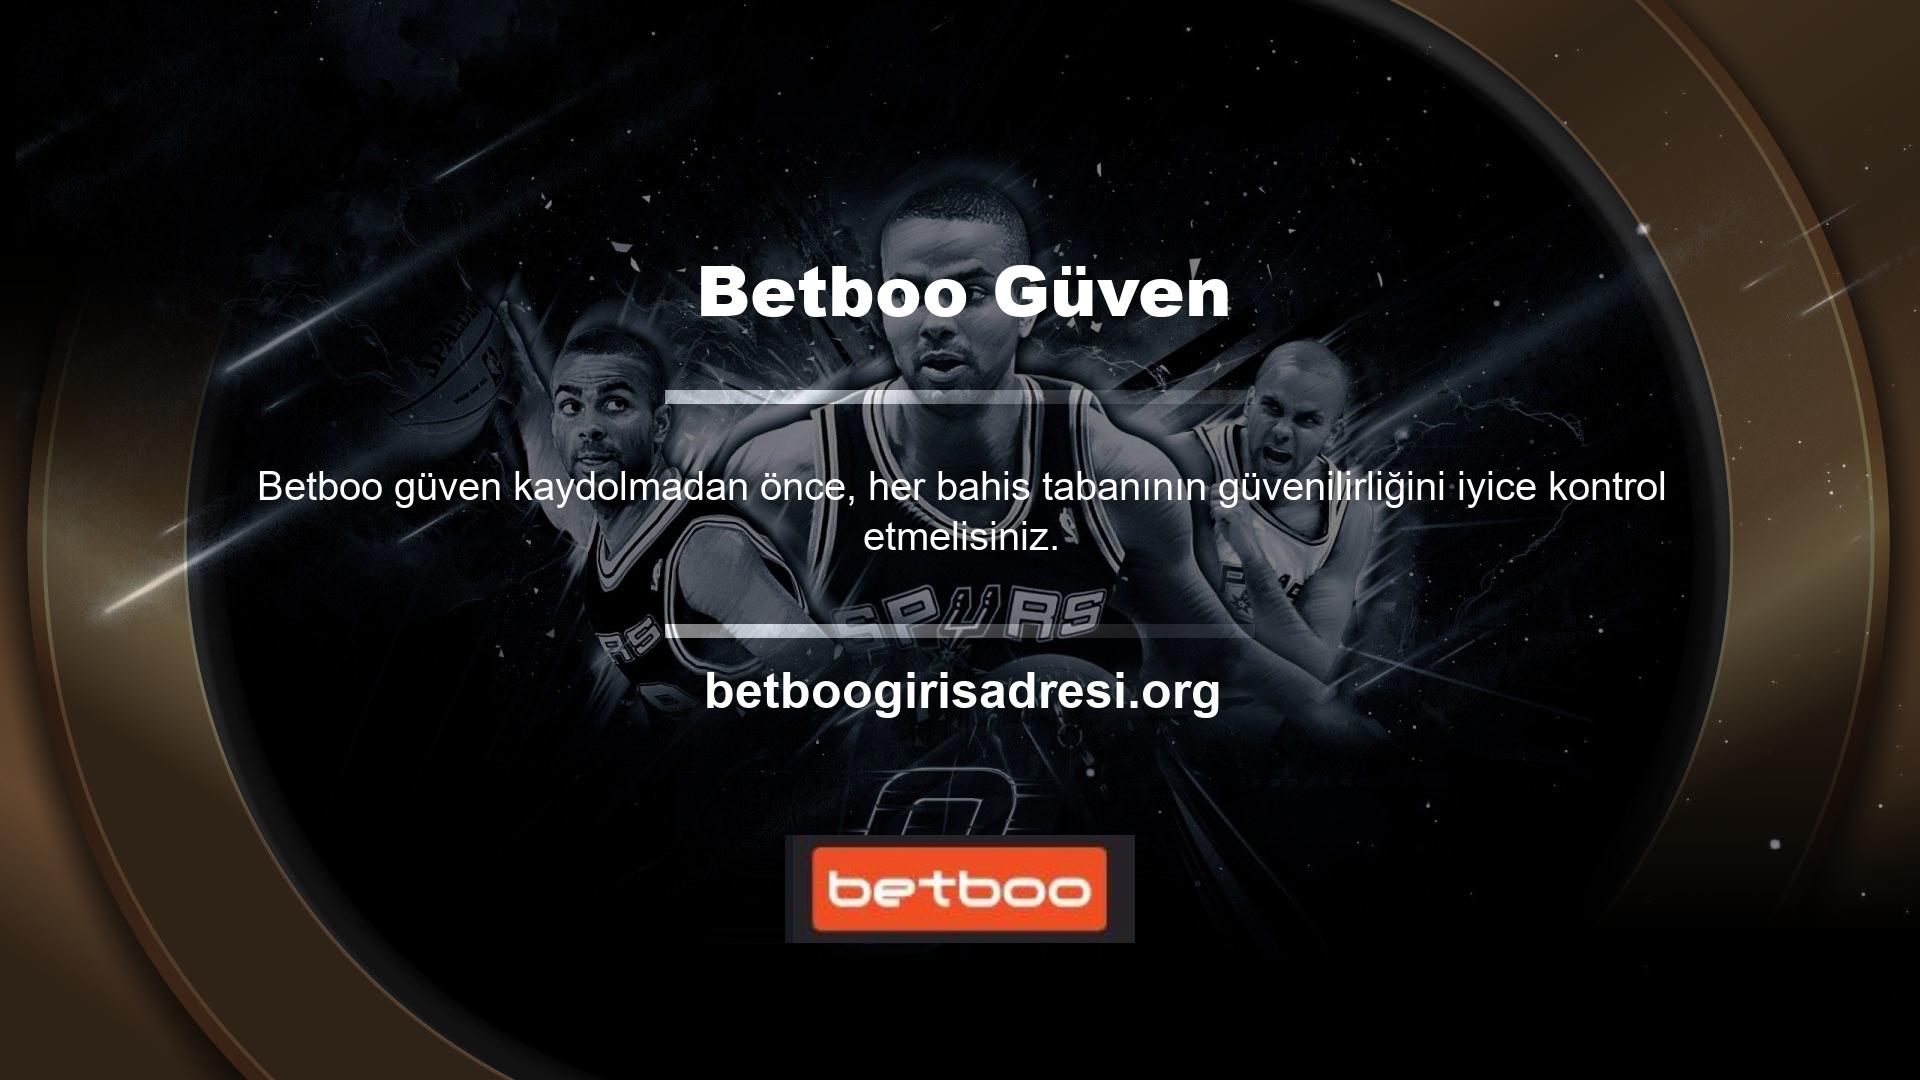 Betboo bu soruya olumlu cevap veren en güvenli bahis şirketlerinden biridir